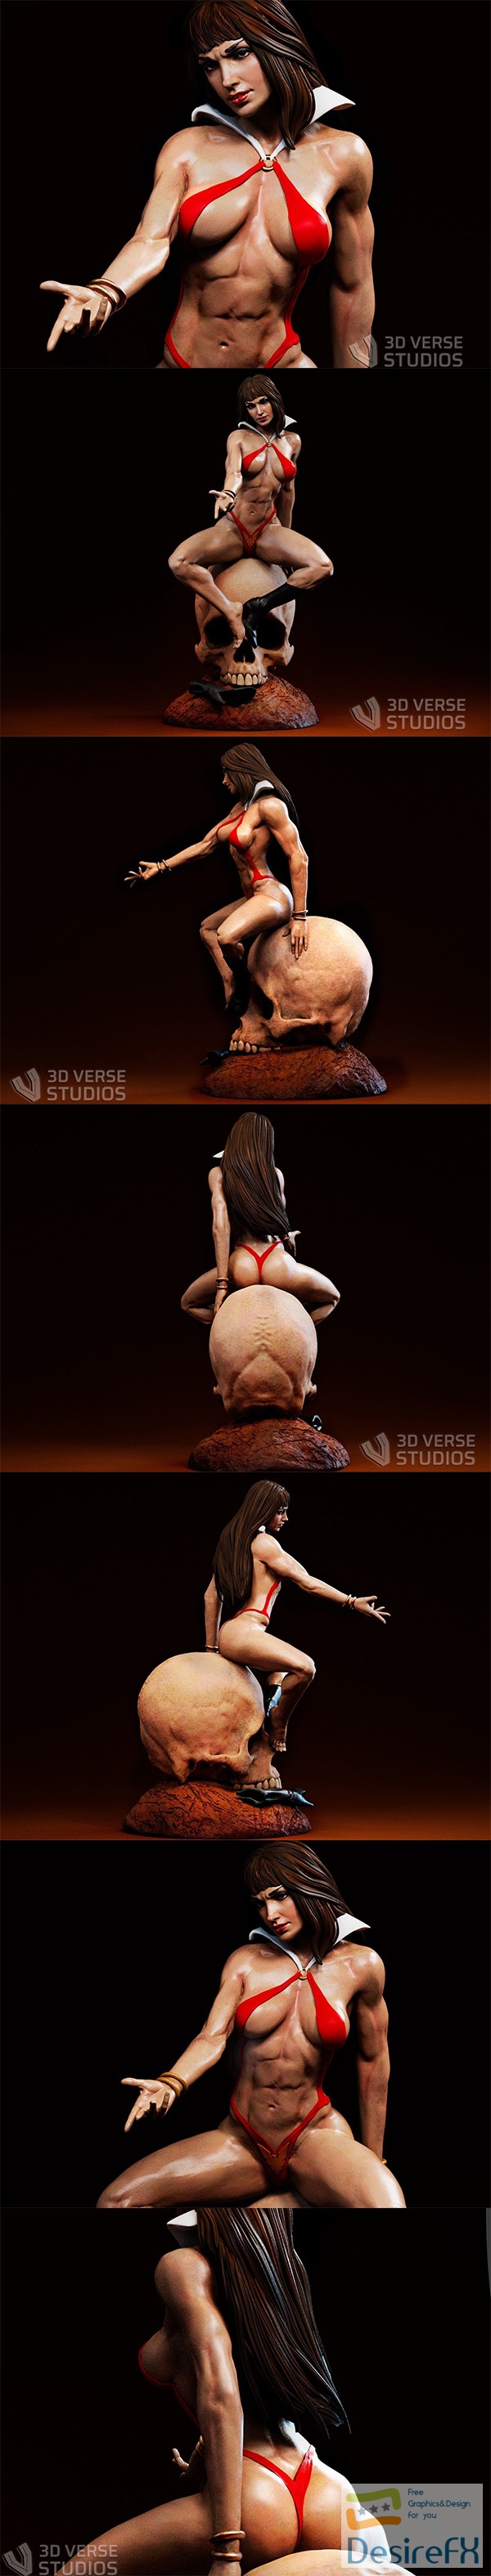 3d Verse Studios – Vampirella – 3D Print